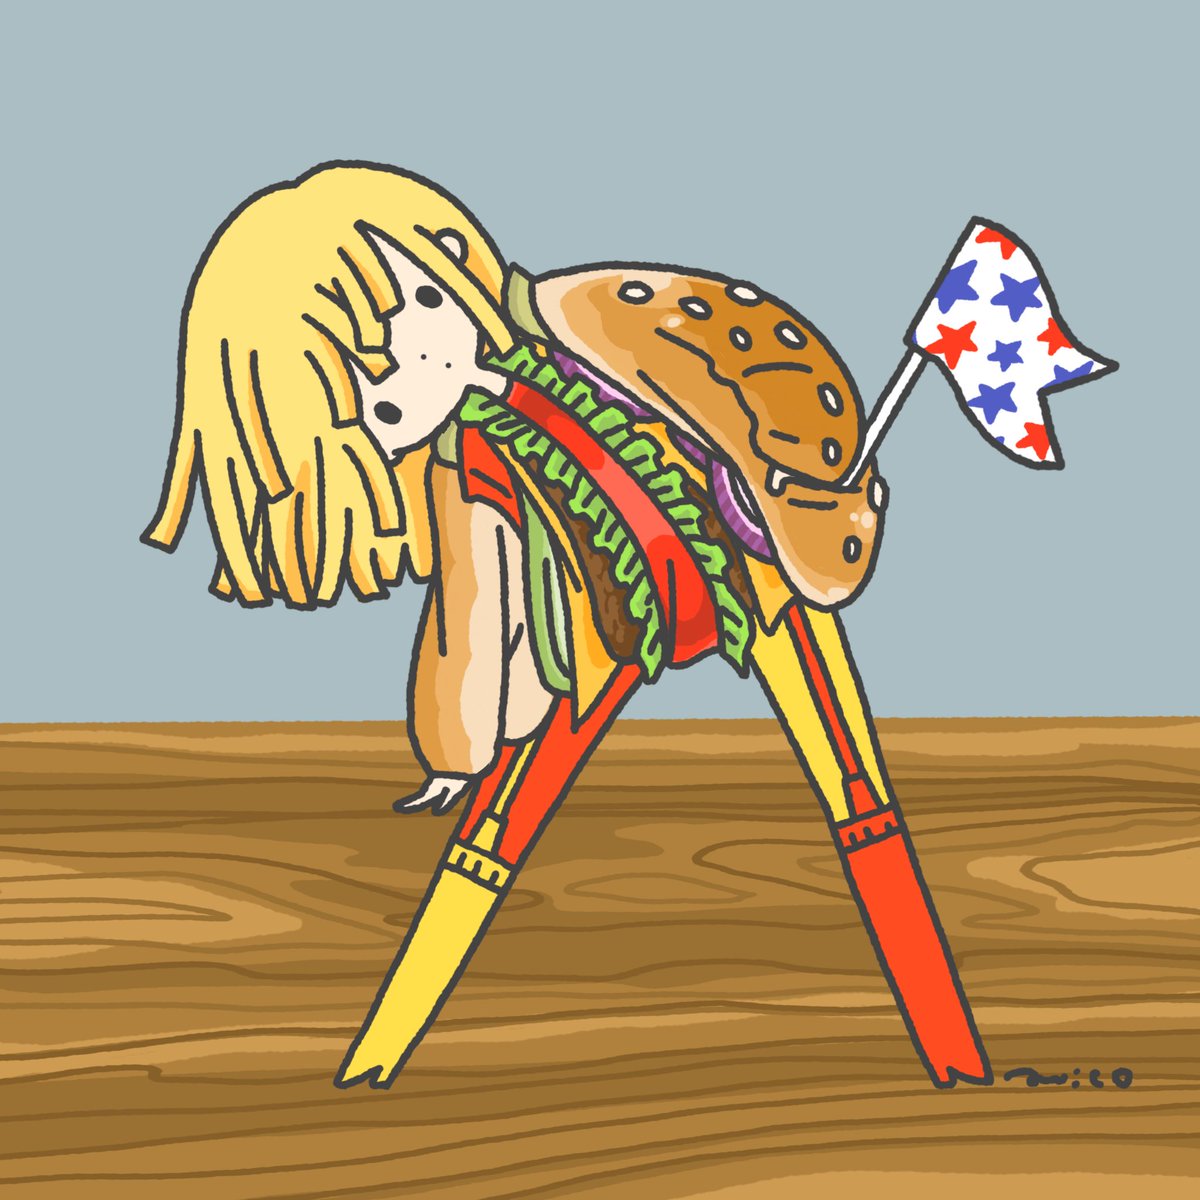 「Hamburger ?

#ハンバーガーの日 」|paricoのイラスト